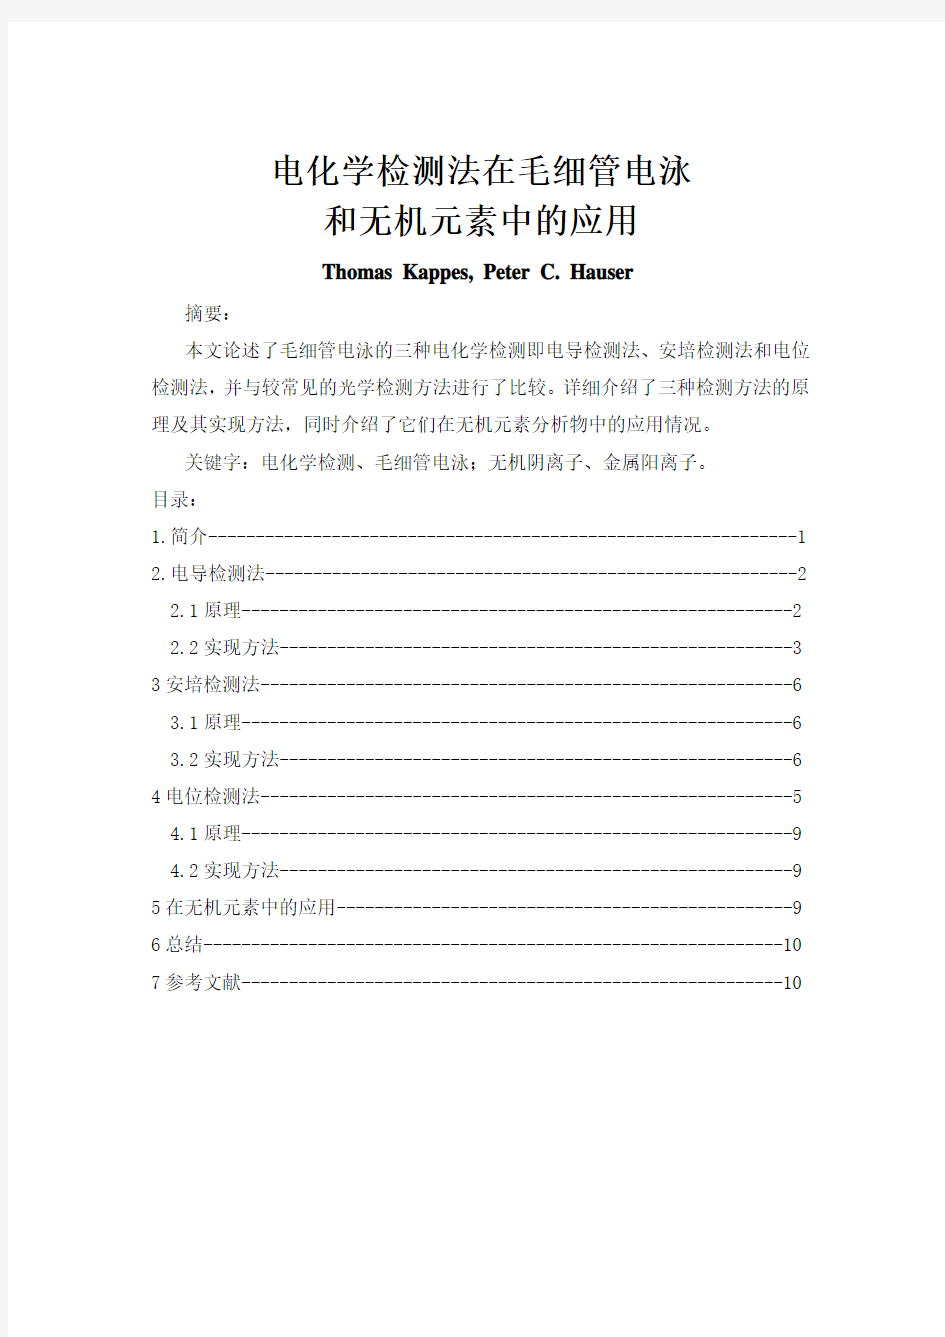 电气工程与自动化专业外文翻译(中文)--毛细管电泳电化学检测方法在无机元素中的应用(节选)